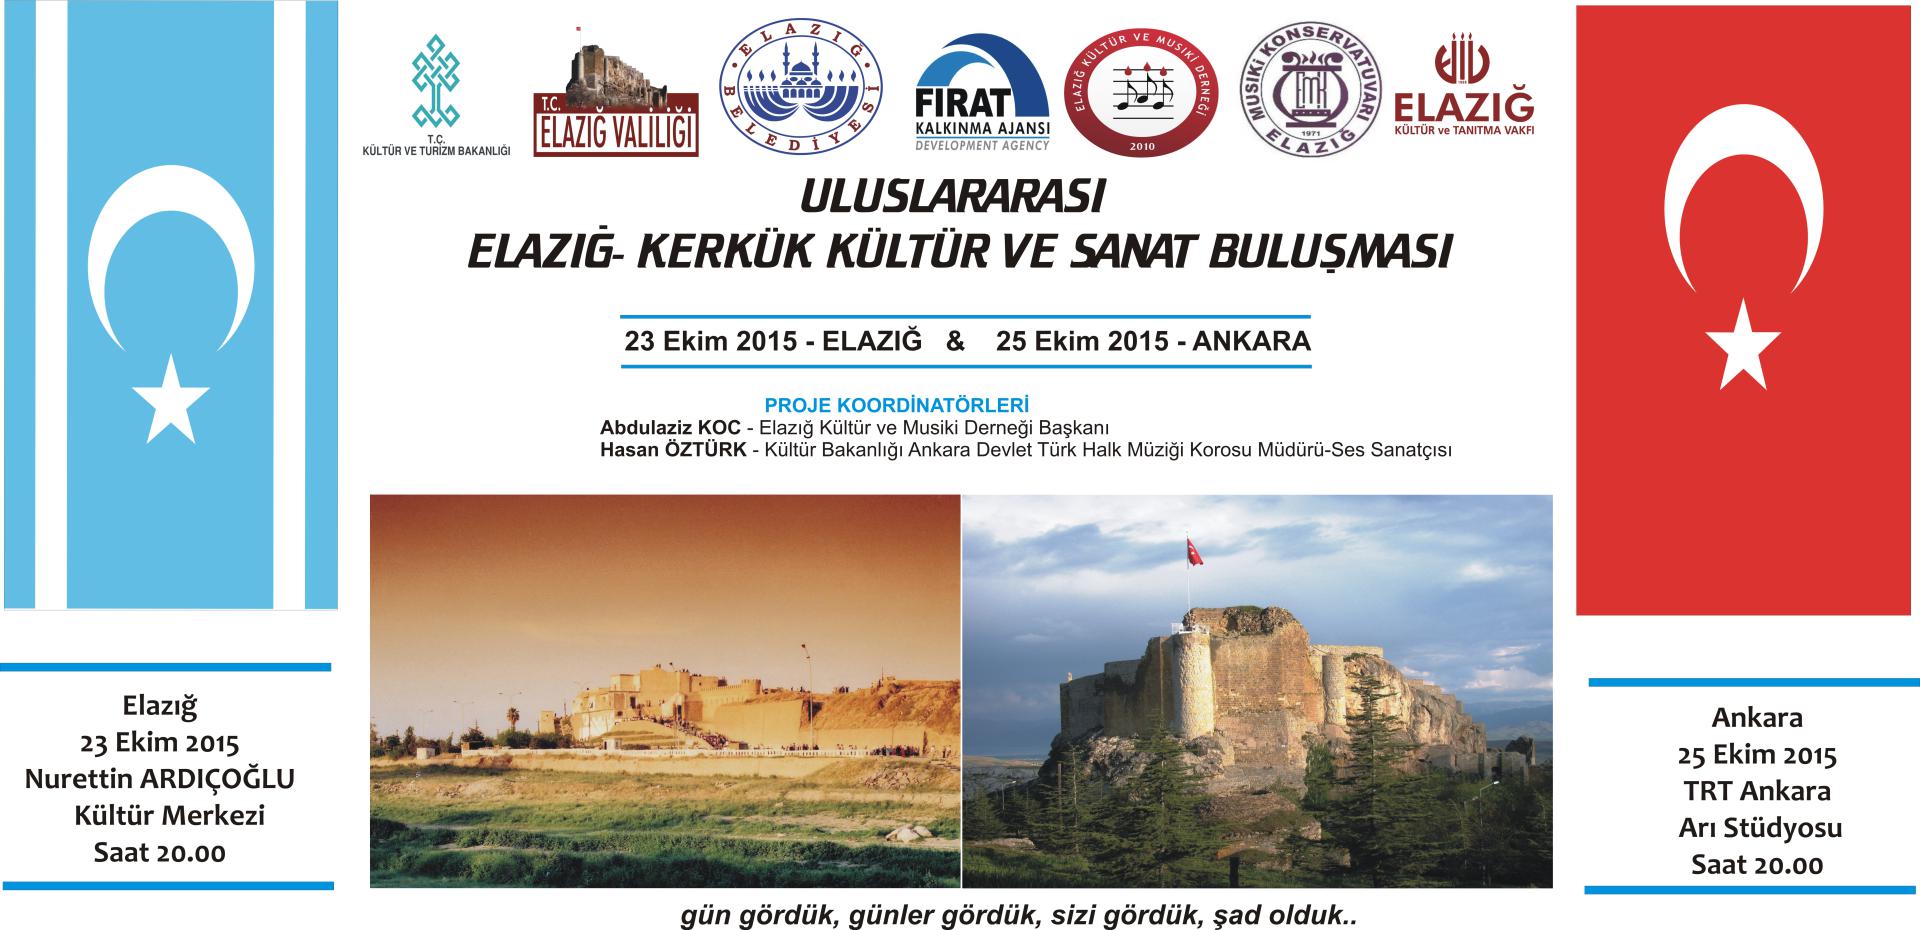 Elazığ-Kerkük Kültür ve Sanat Buluşması Projesi-2015 